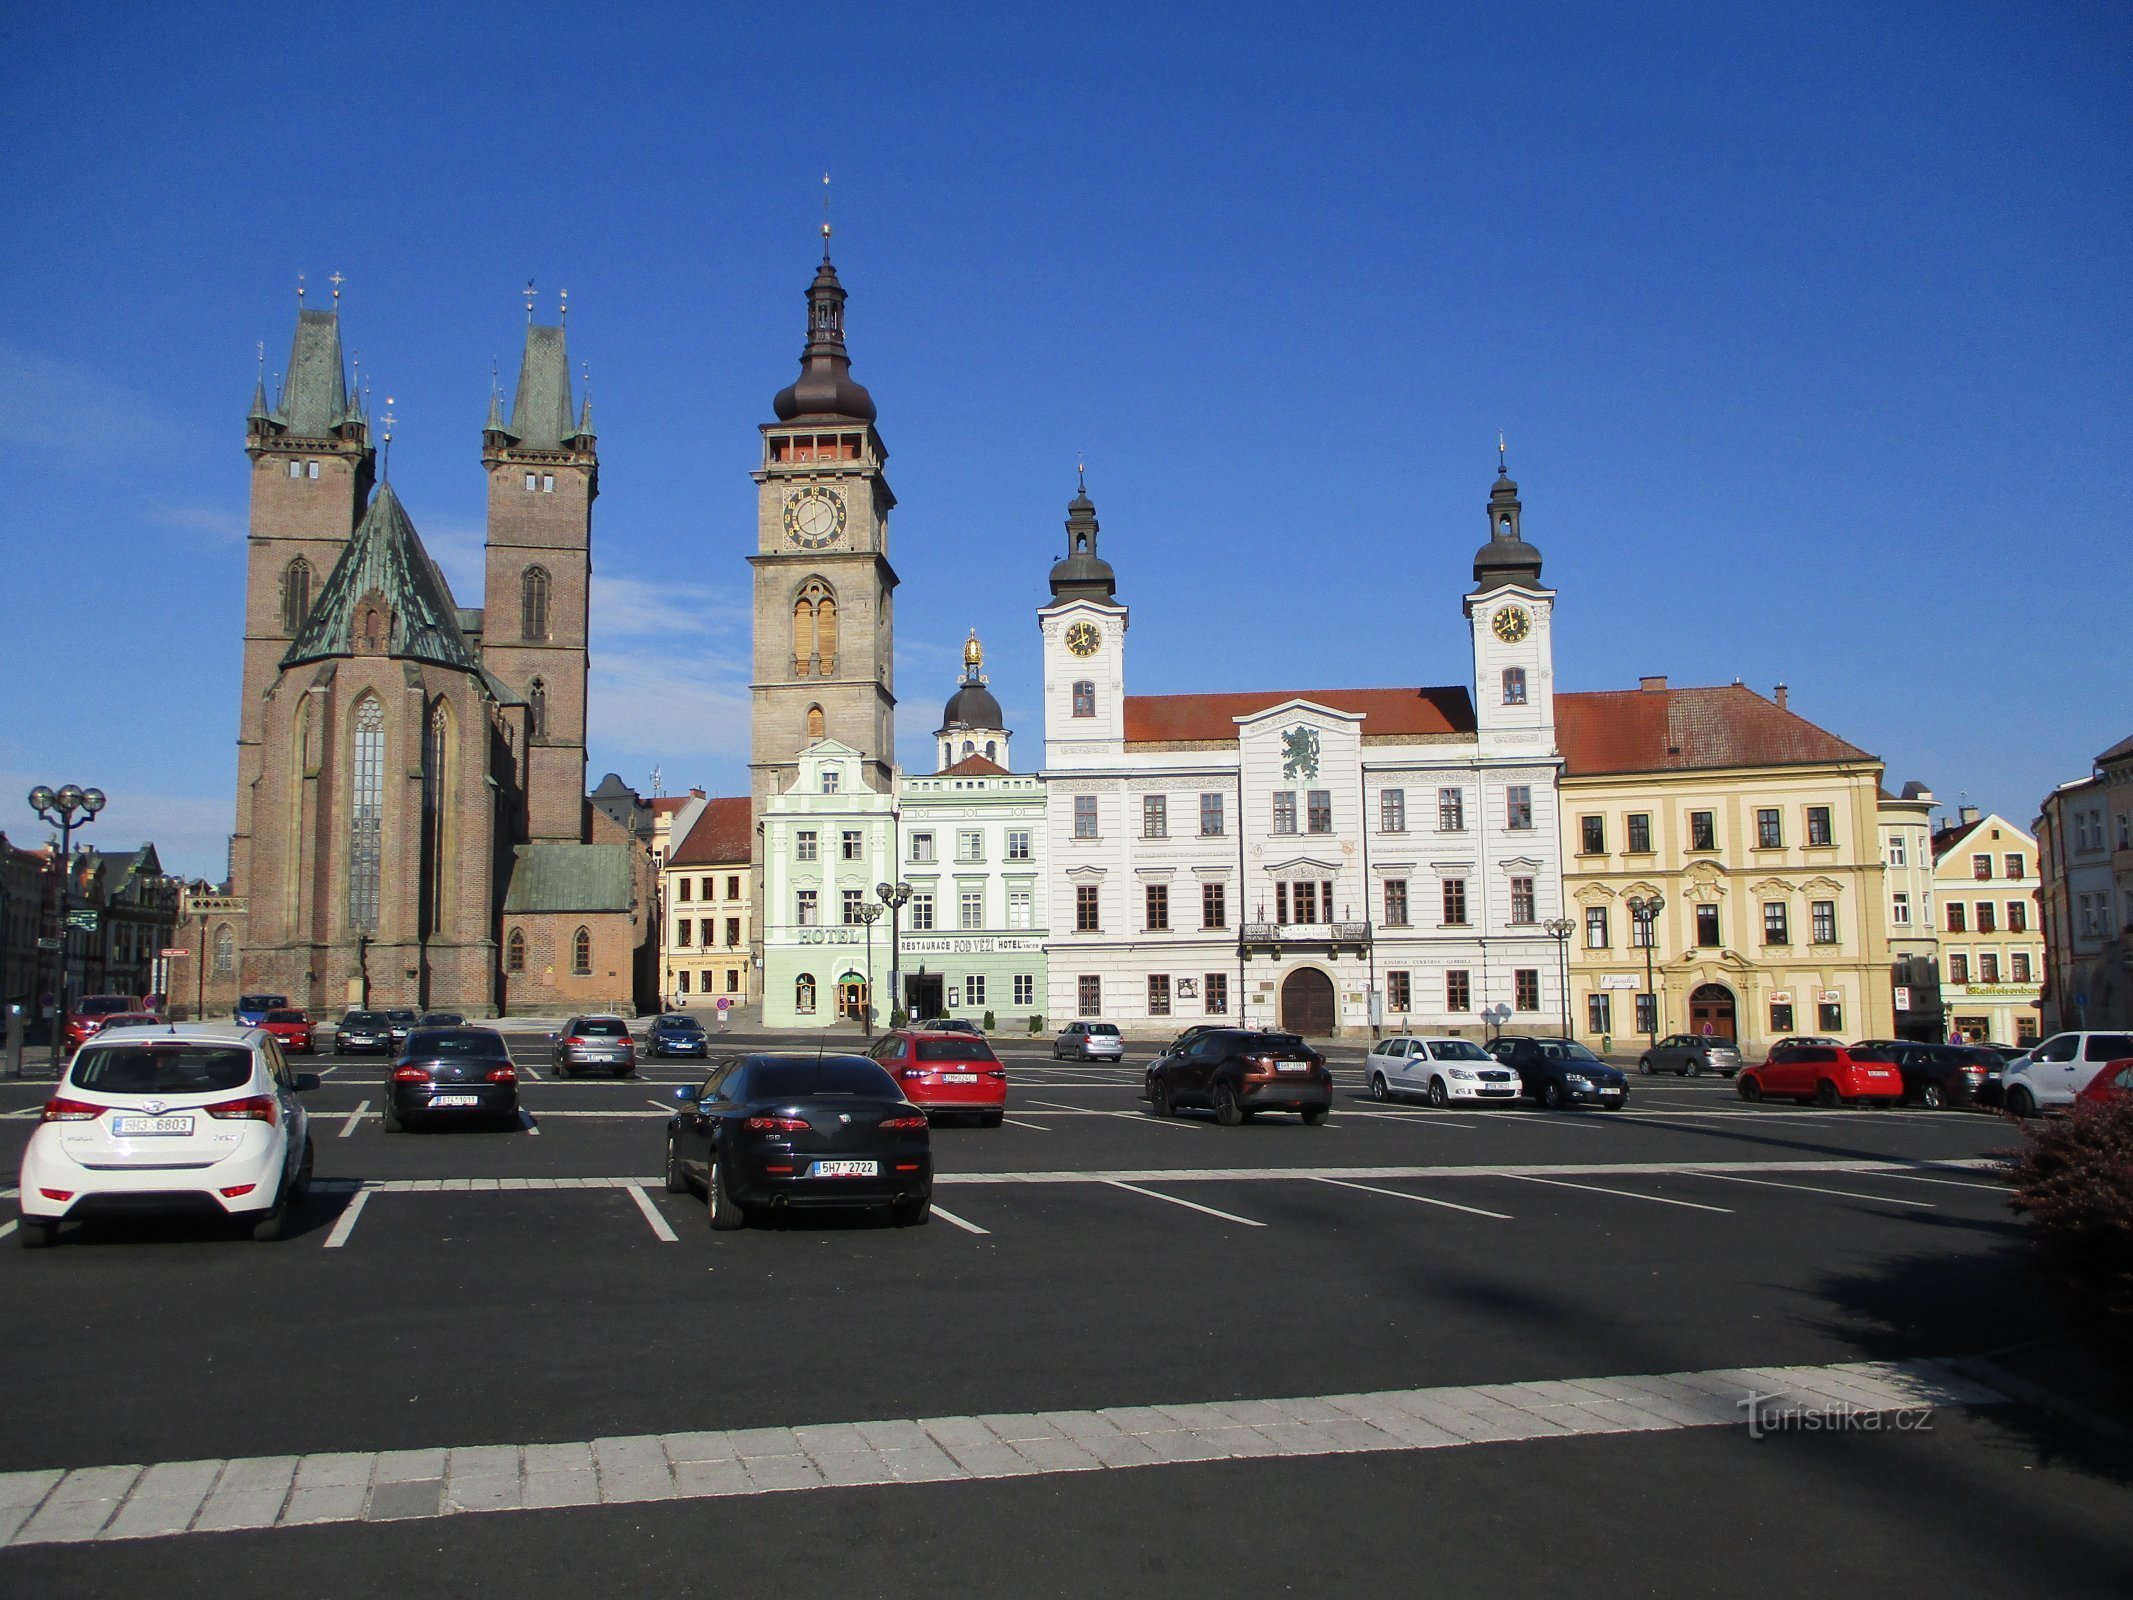 Katedrála, Bílá věž a západní řada domů v čele s radnicí (Hradec Králové, 6.7.2019)